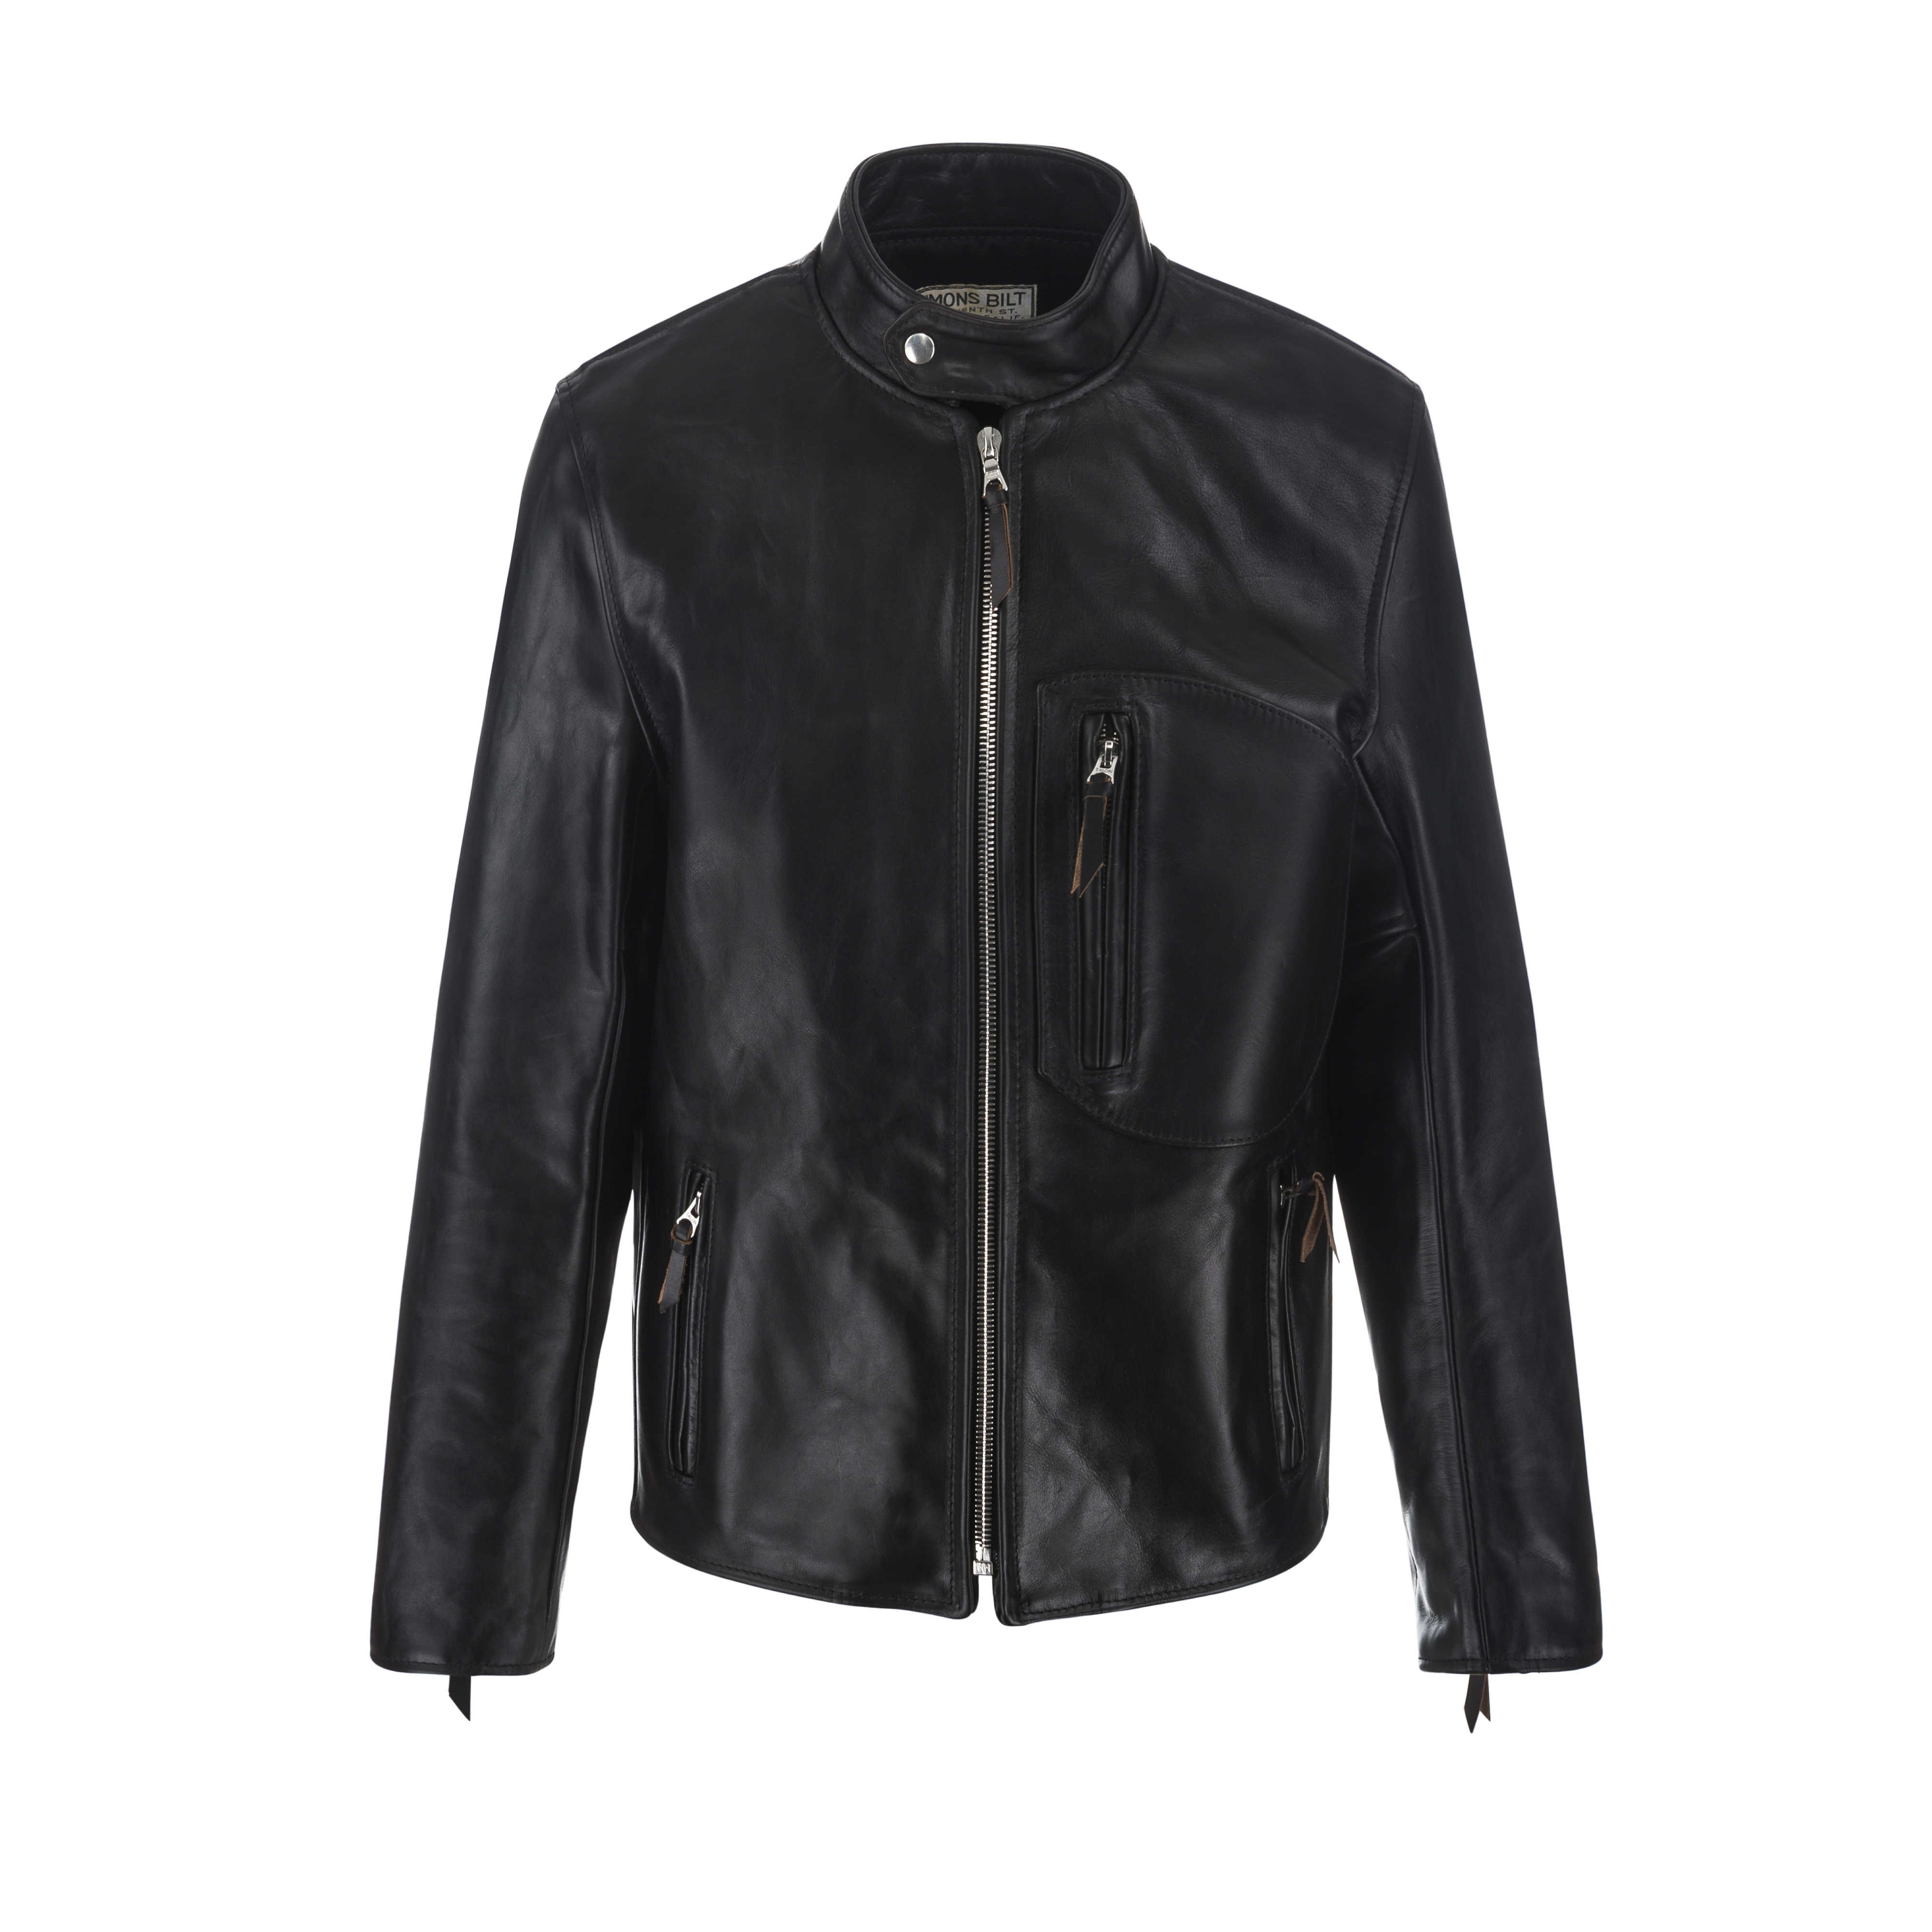 SB Vintage Racer Leather Jacket Black